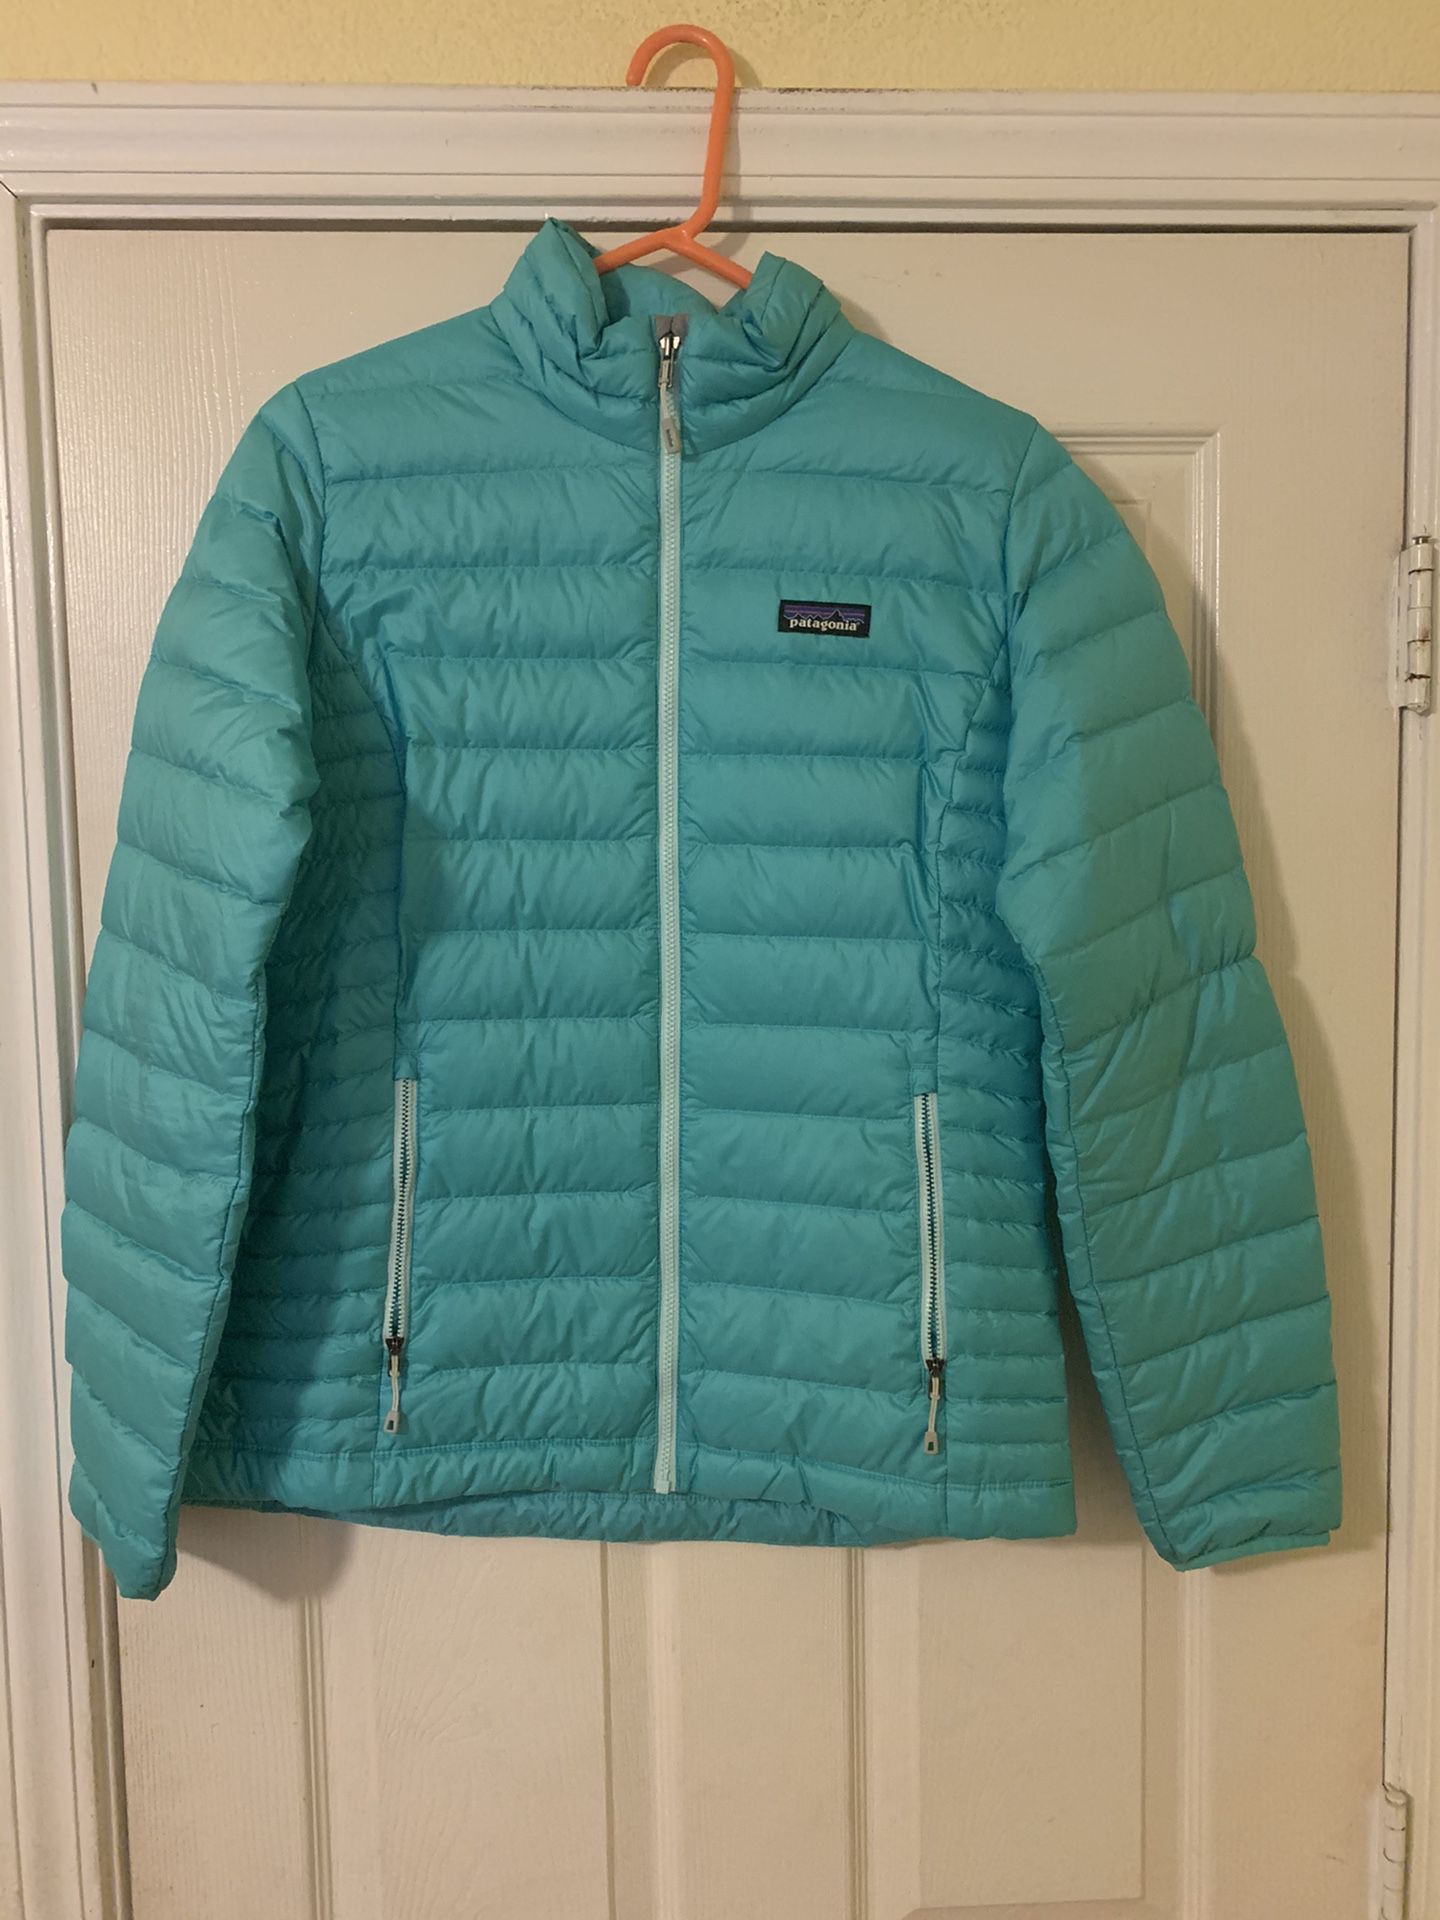 Women’s Patagonia jacket